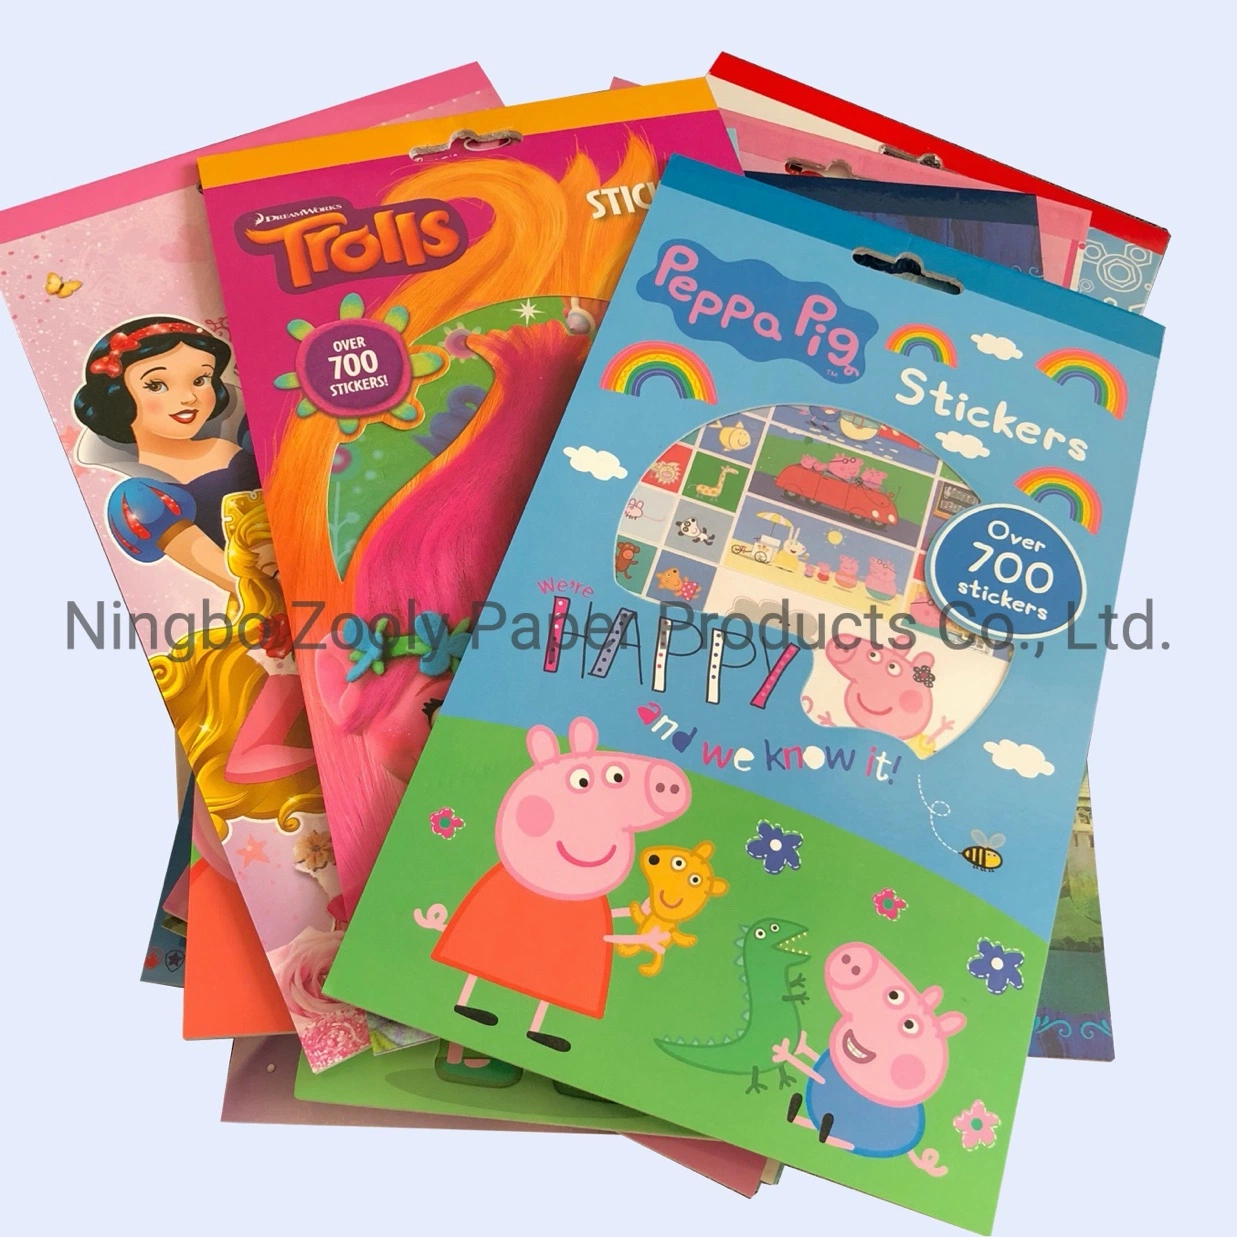 Los niños aprender magia adhesivo magnético Libro de aprendizaje para niños juguetes educativos Sticker Book imán de nevera